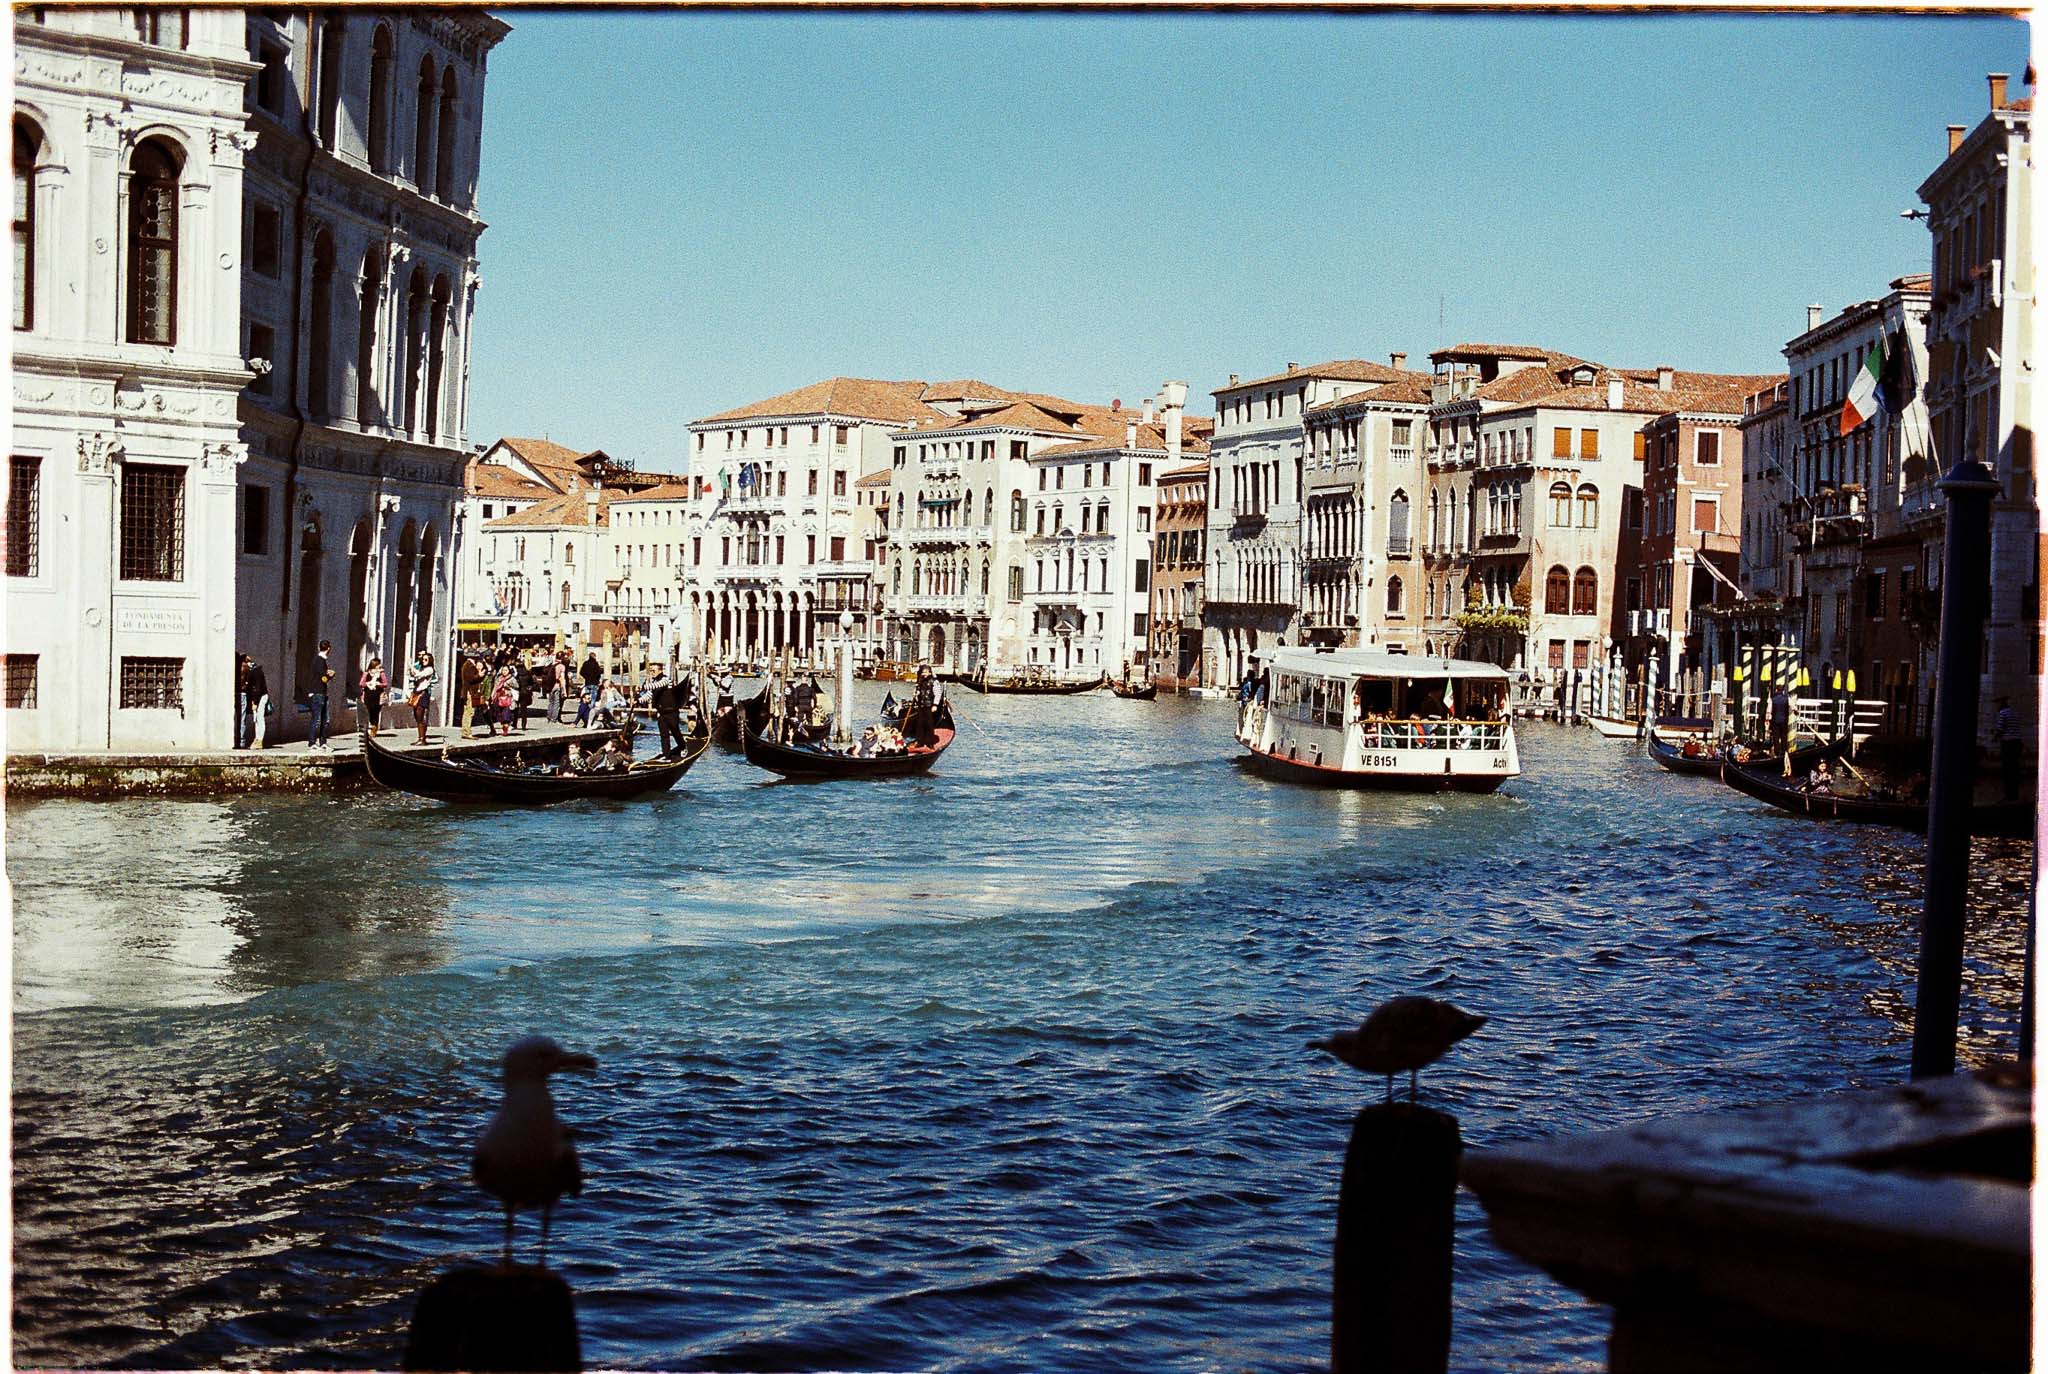 Grand Canal Venice Italy Agfa Vista 100 expired